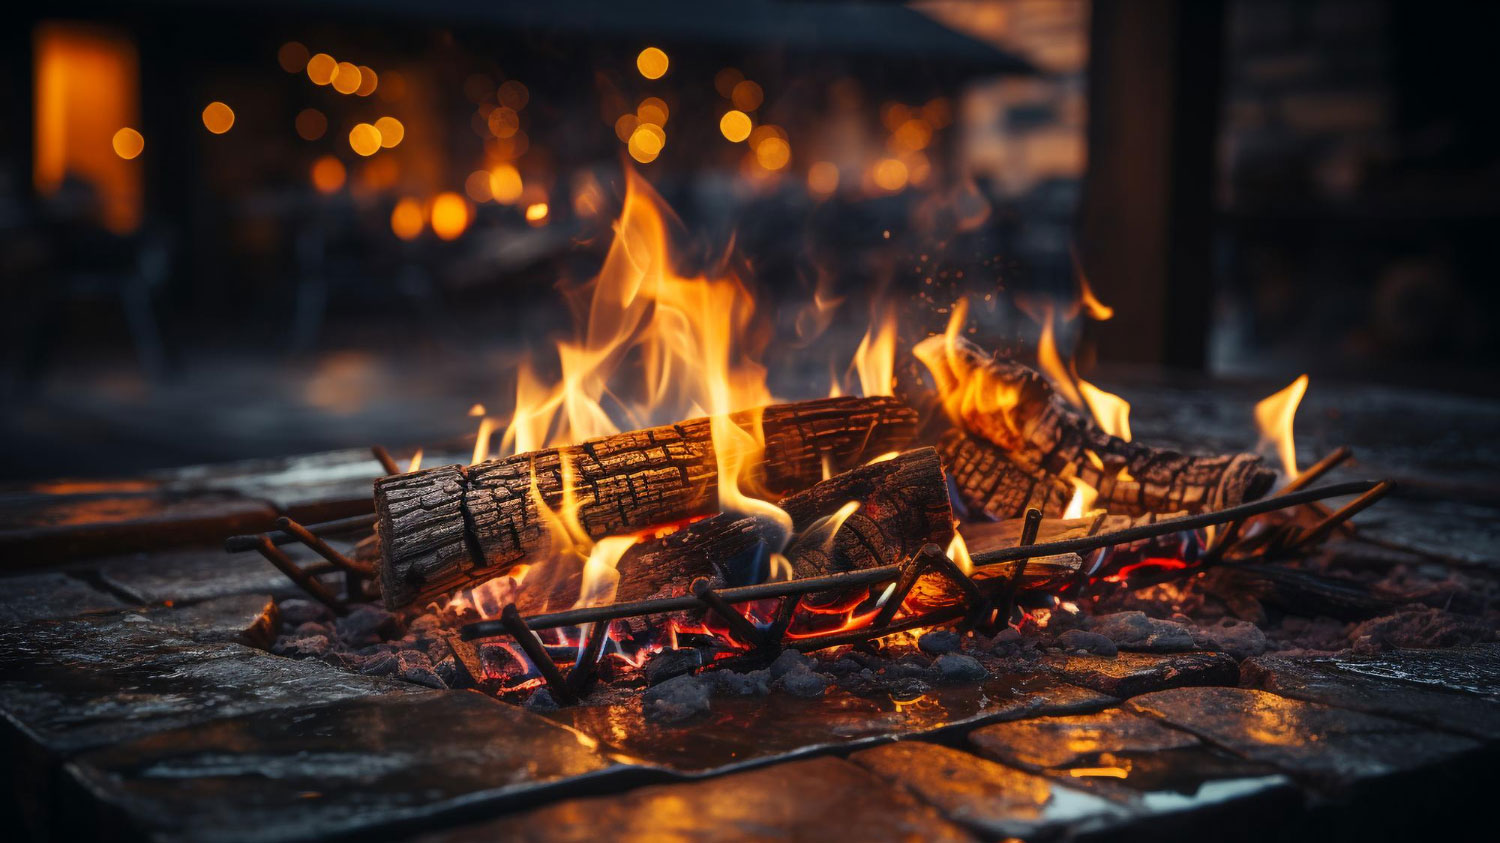 تصویر شعله آتش یک چوب در حال سوختن 